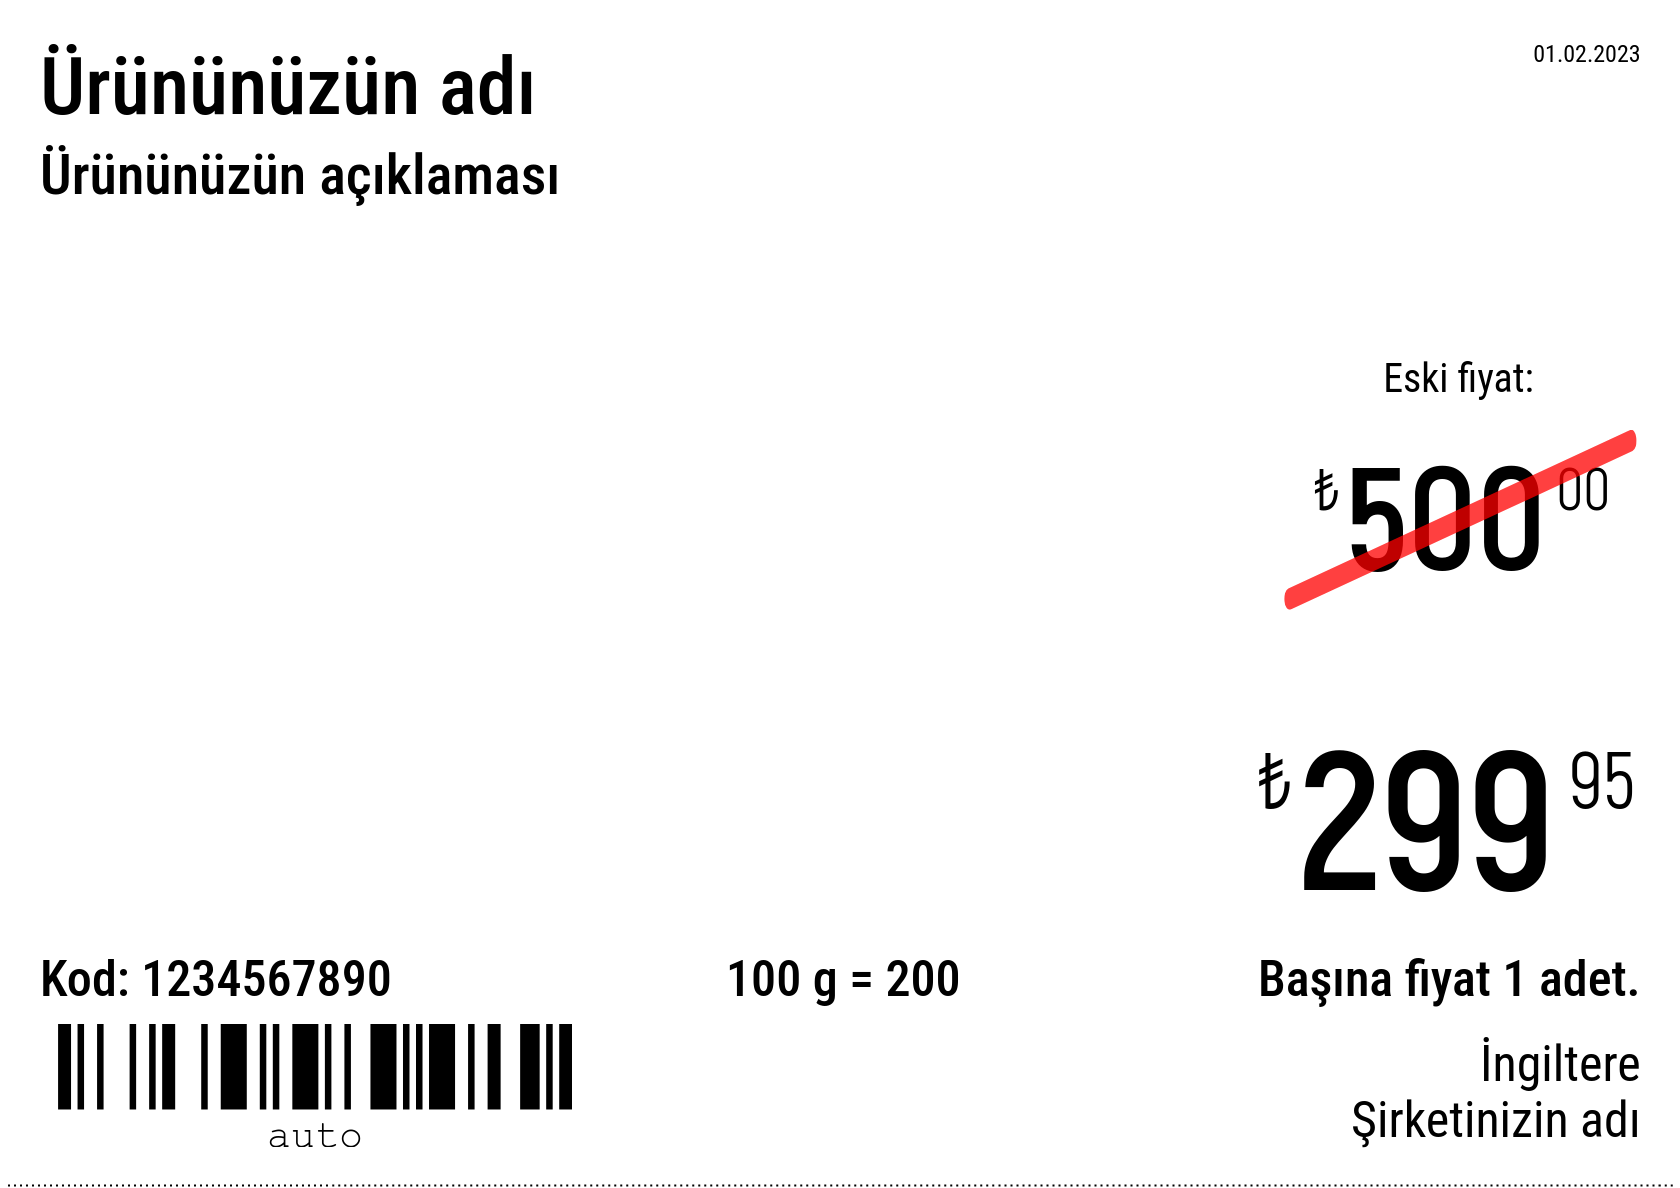 Fiyat etiketi Yeni / A5 (yarım A4 sayfa) / Promosyonlu